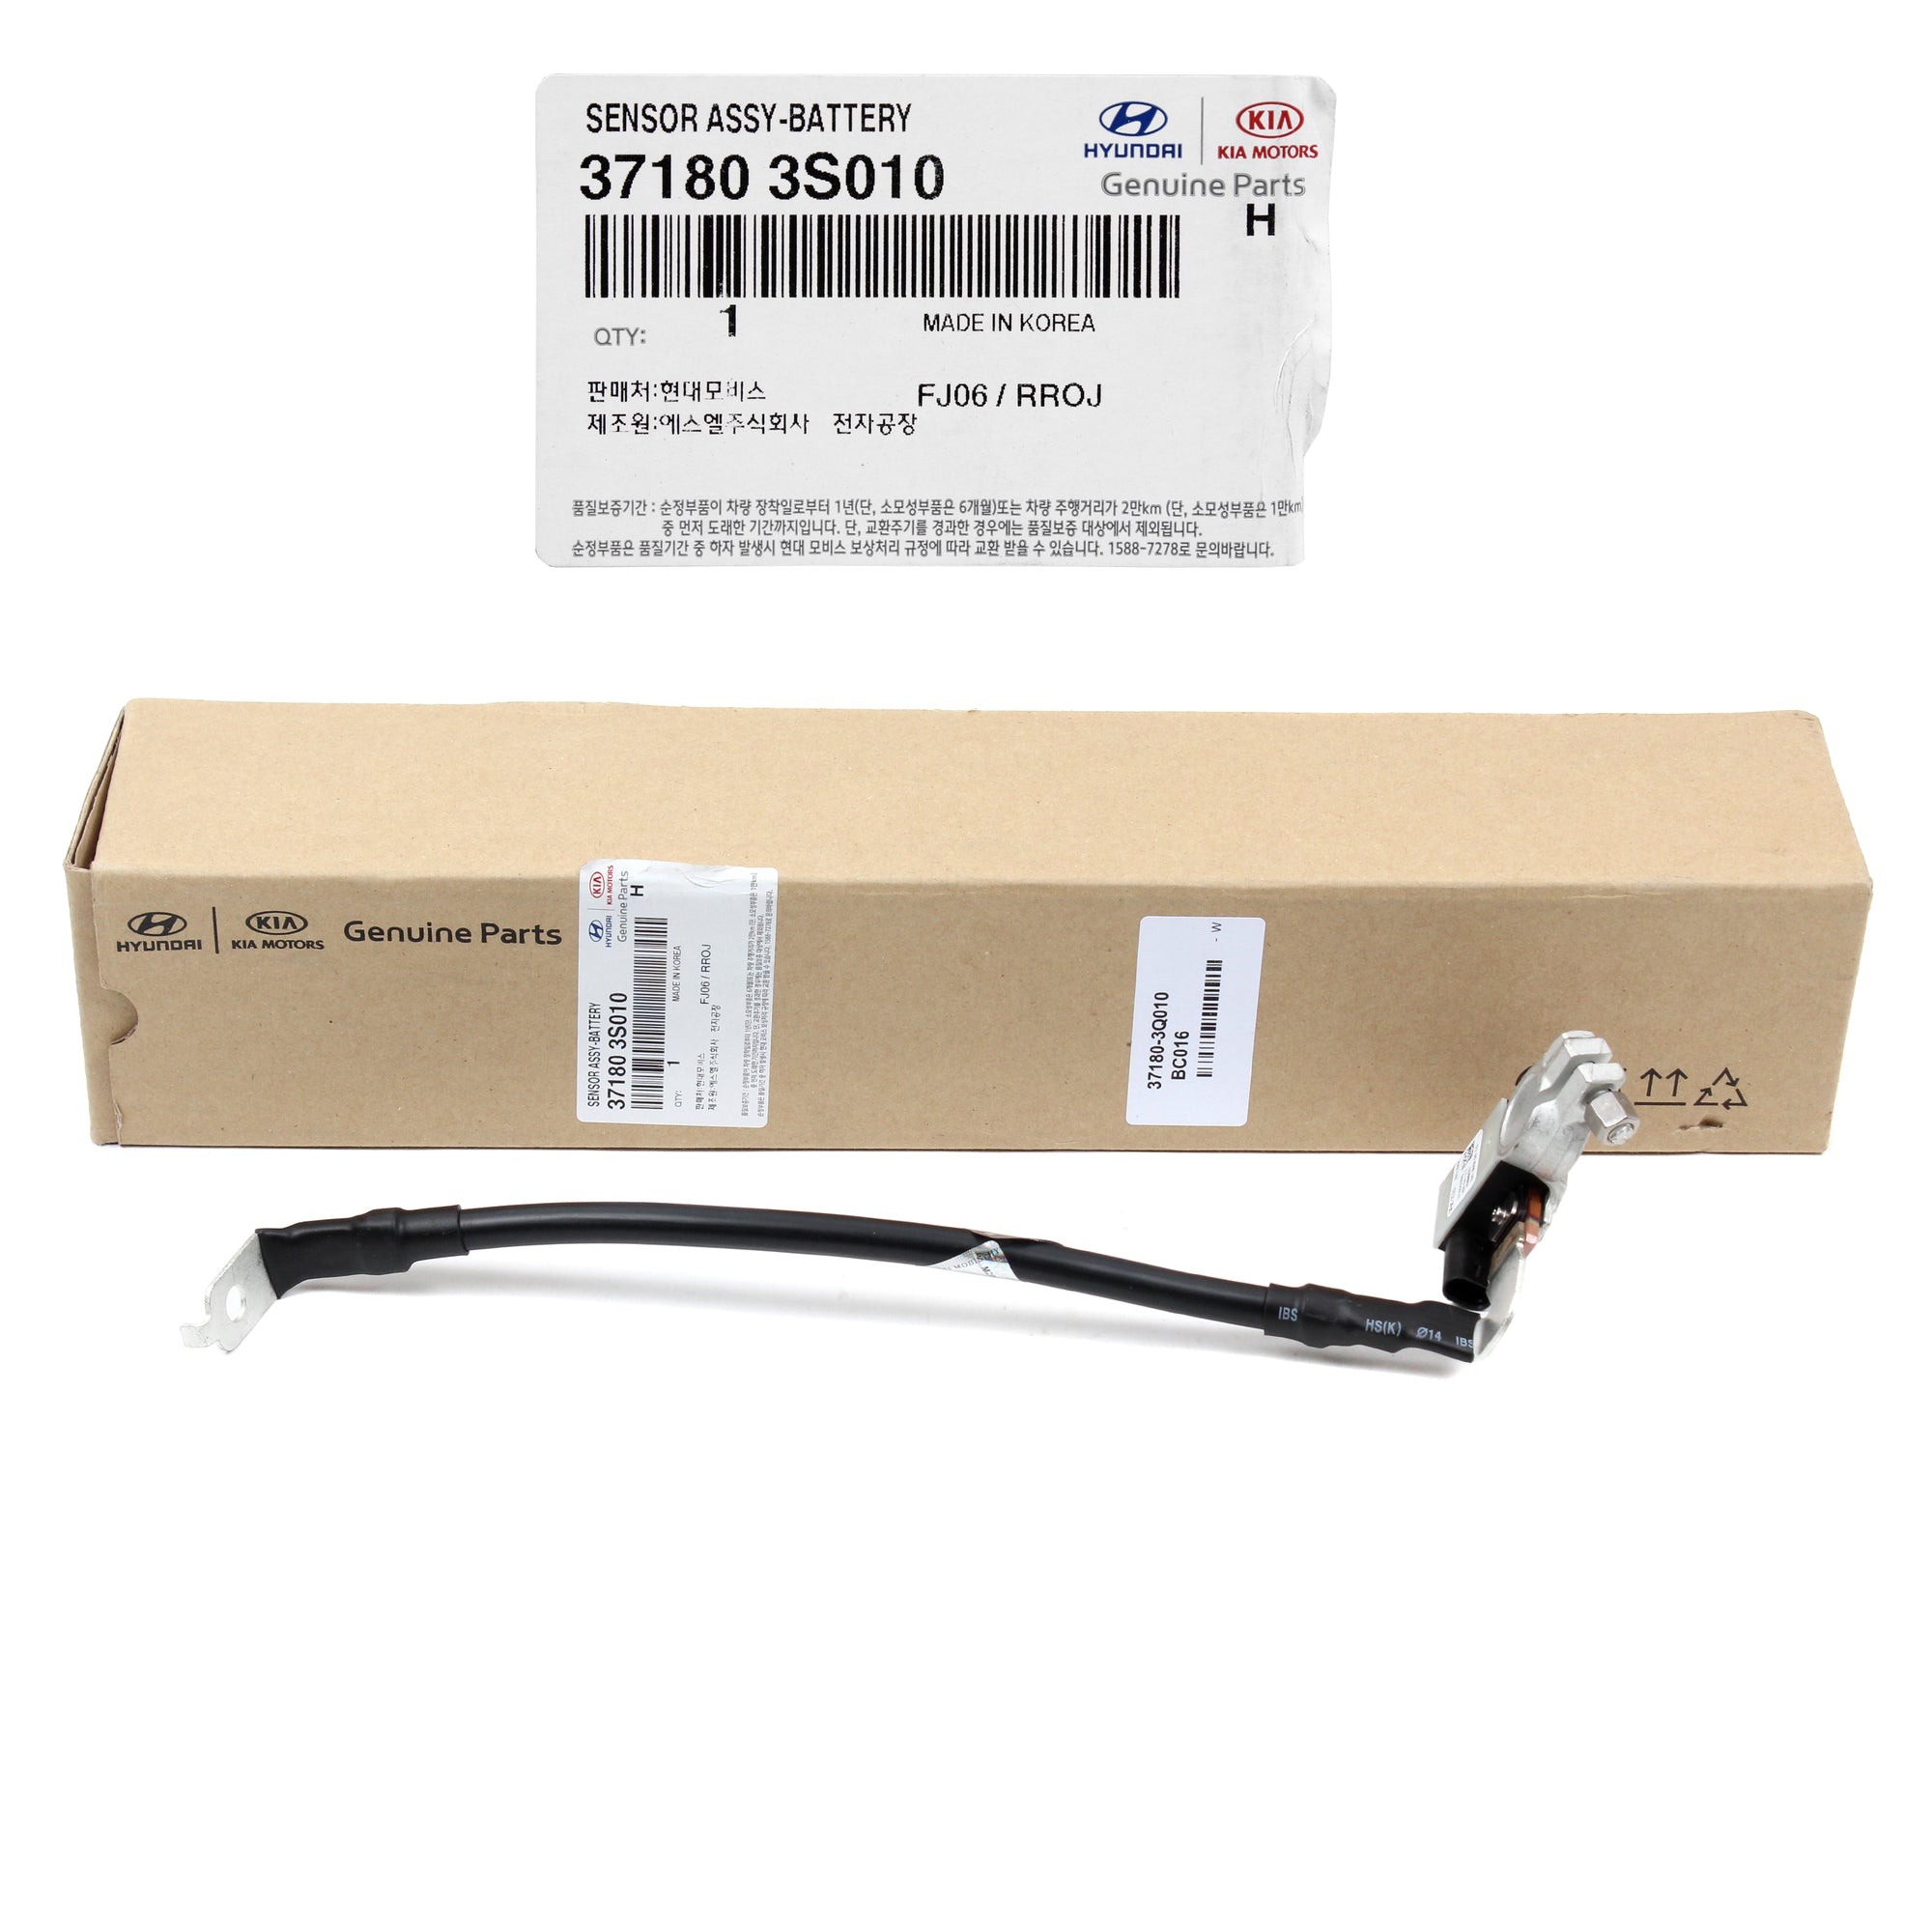 GENUINE Battery Cable NEGATIVE for 11-14 Hyundai Sonata 371803Q010 371803S010